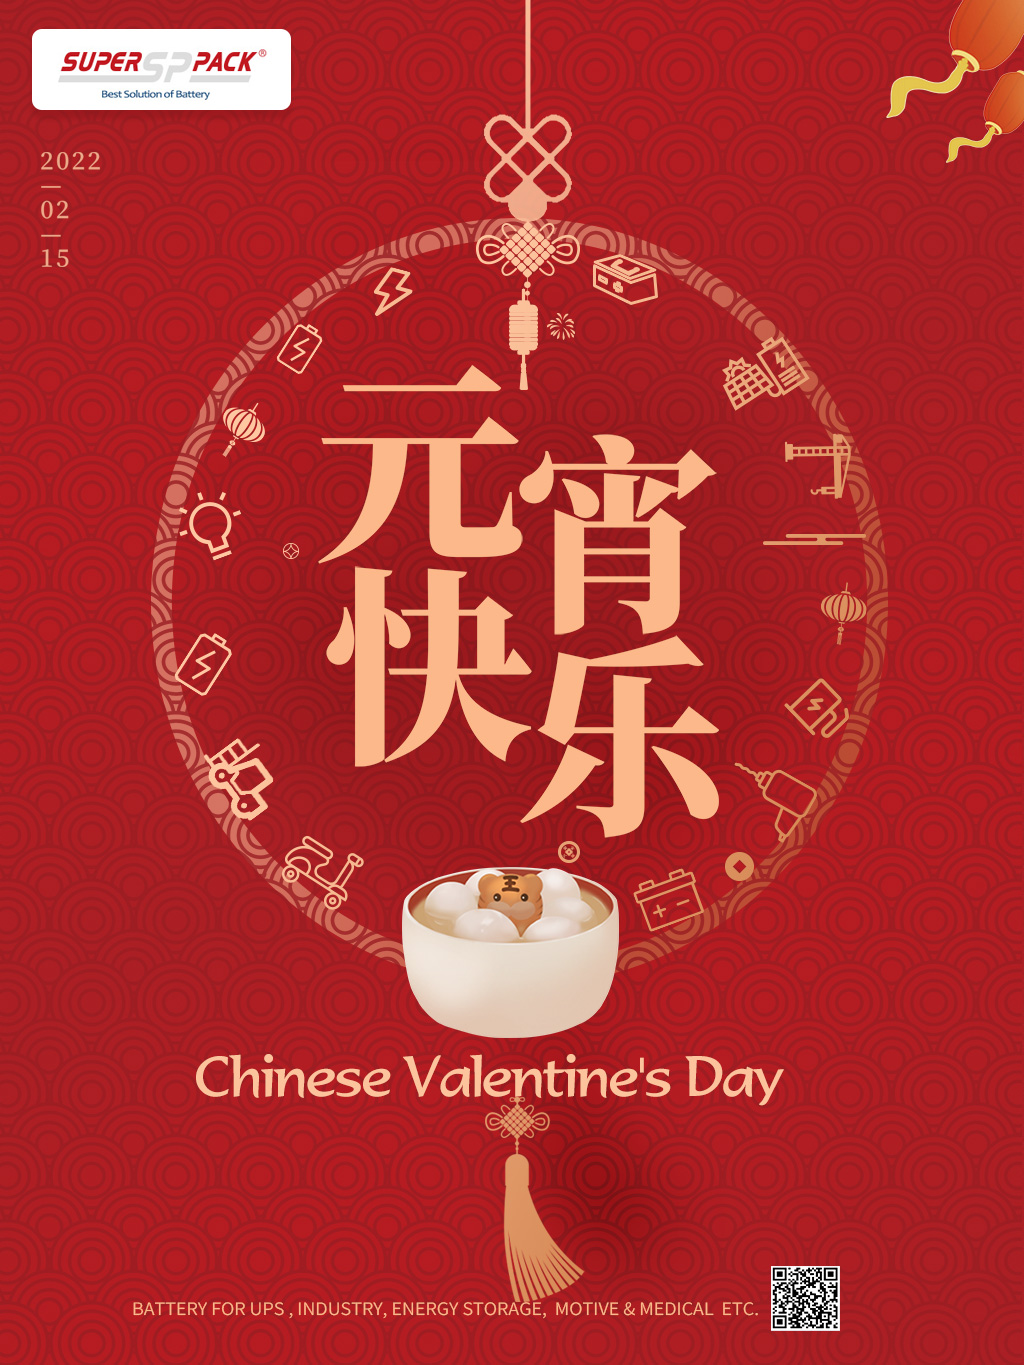 yuanxiao festival (giorno cinese di San Valentino's)
